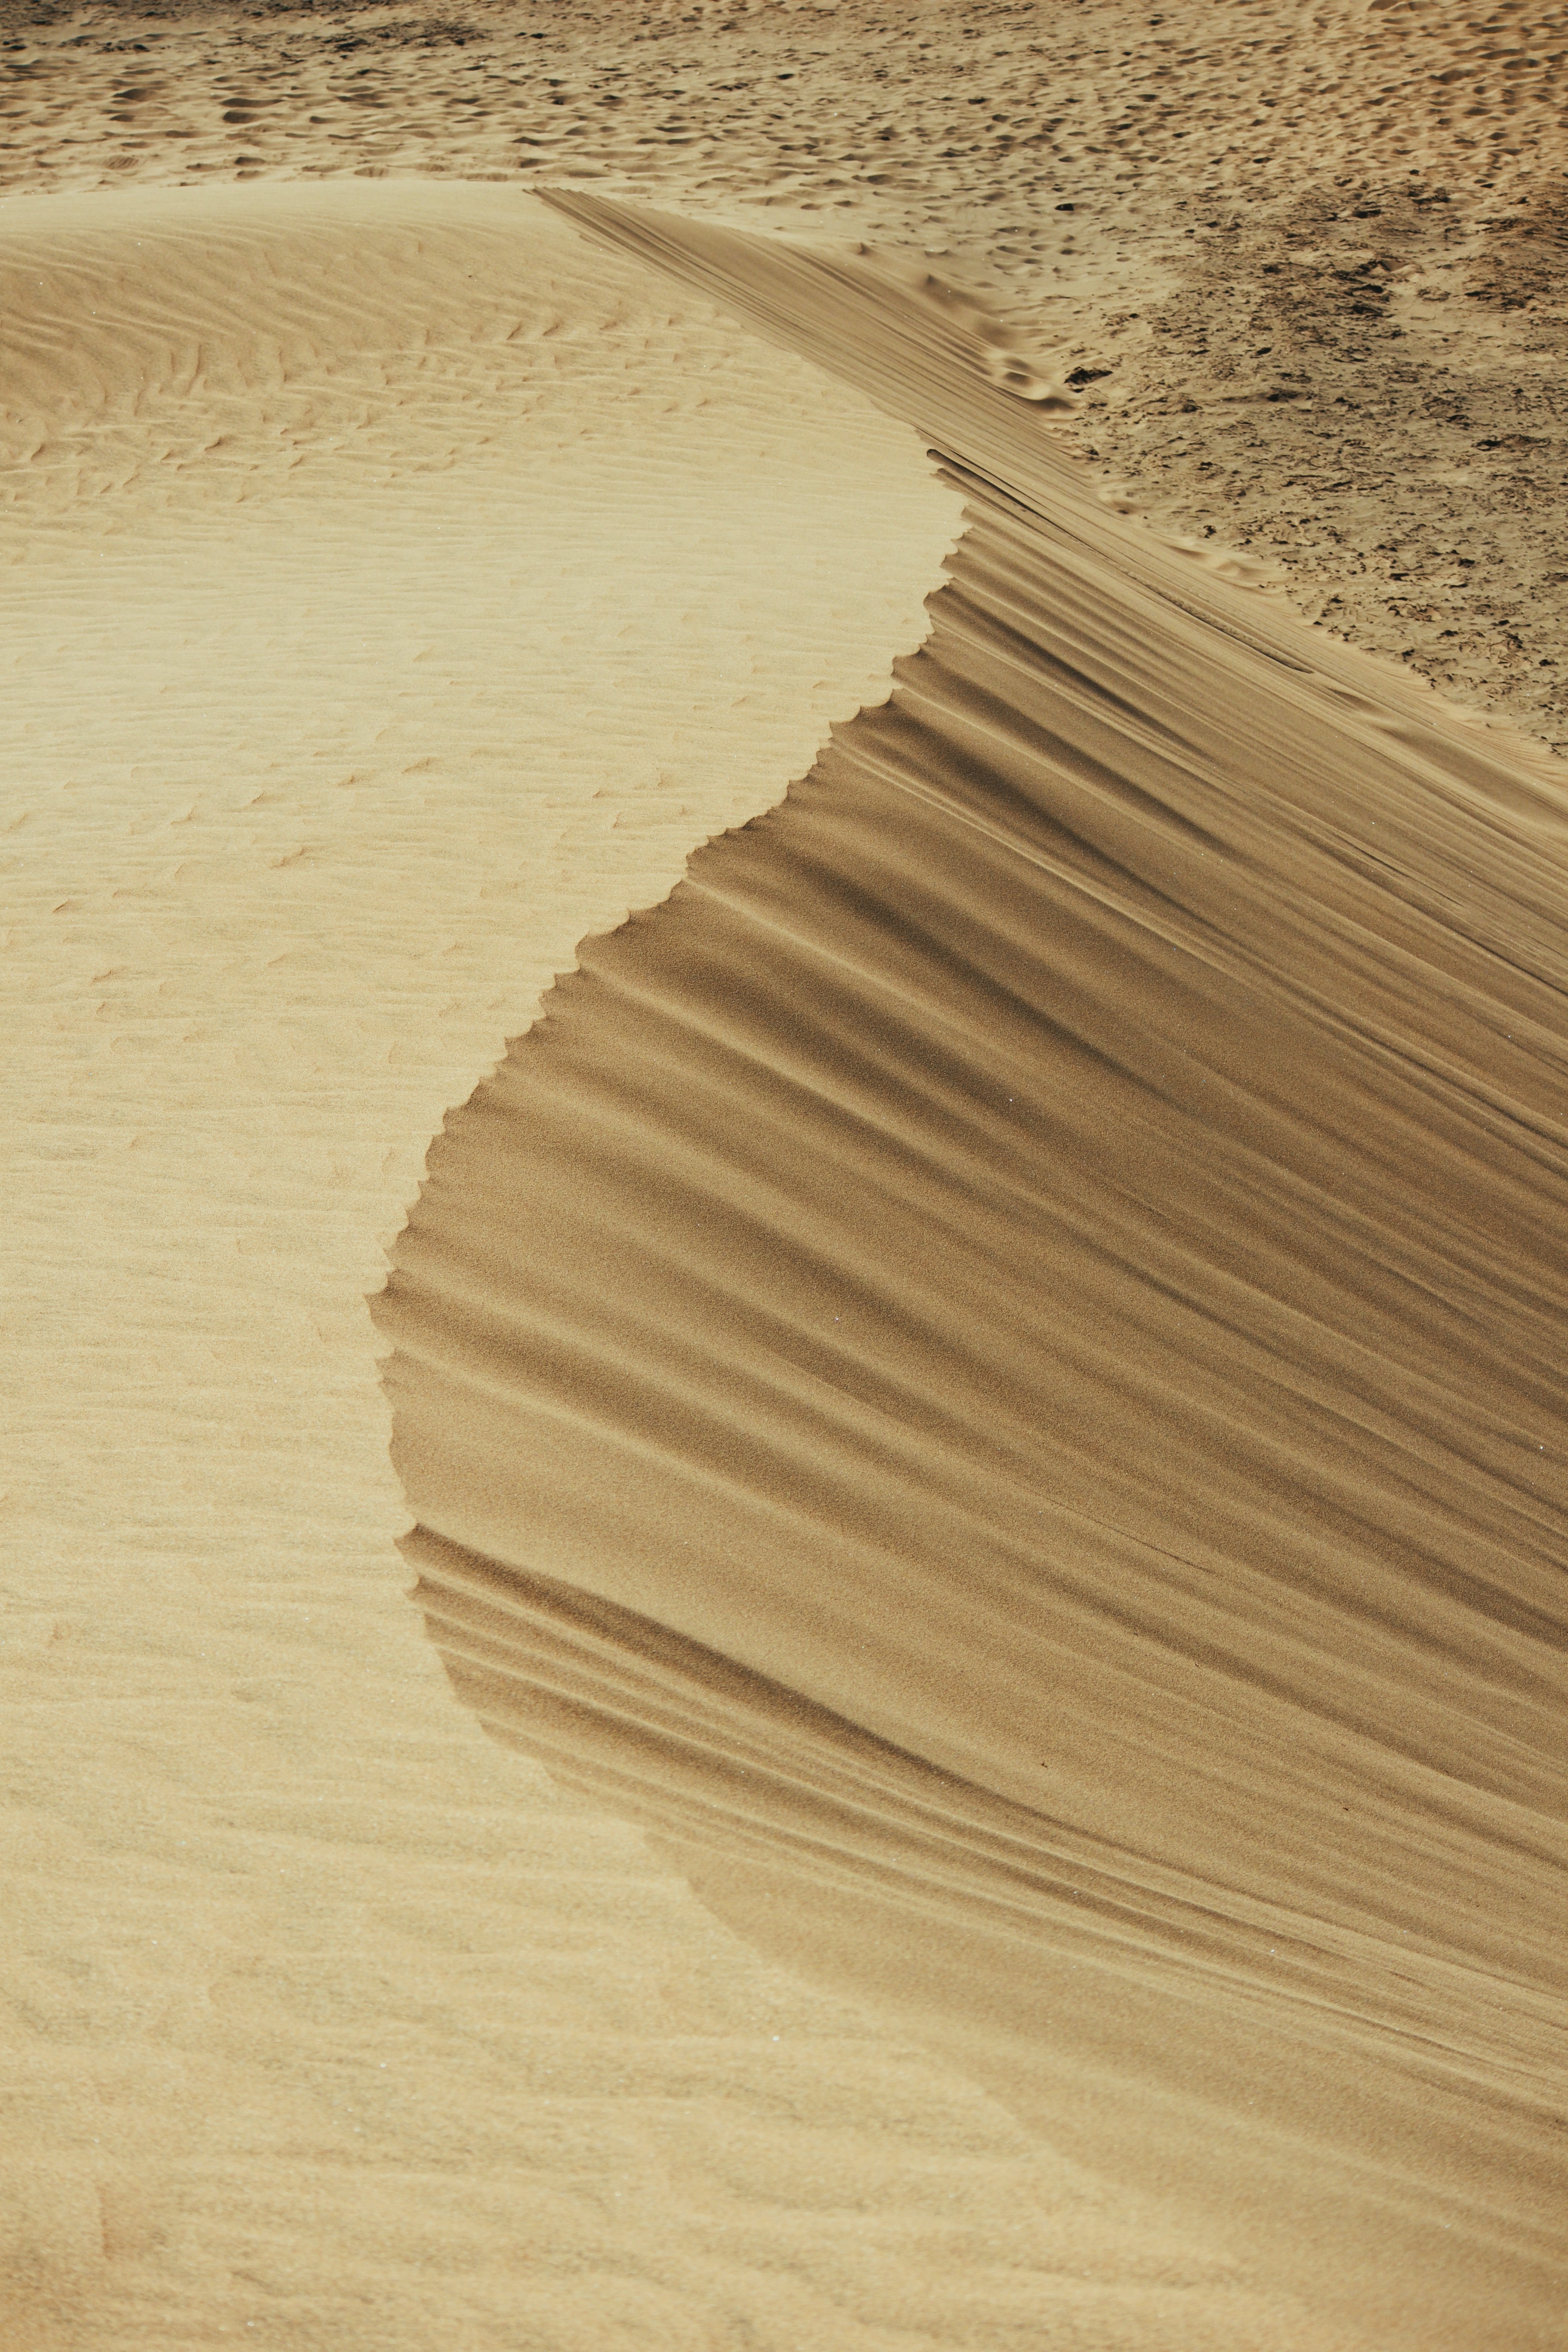 dunes, nature, sand, desert, dust